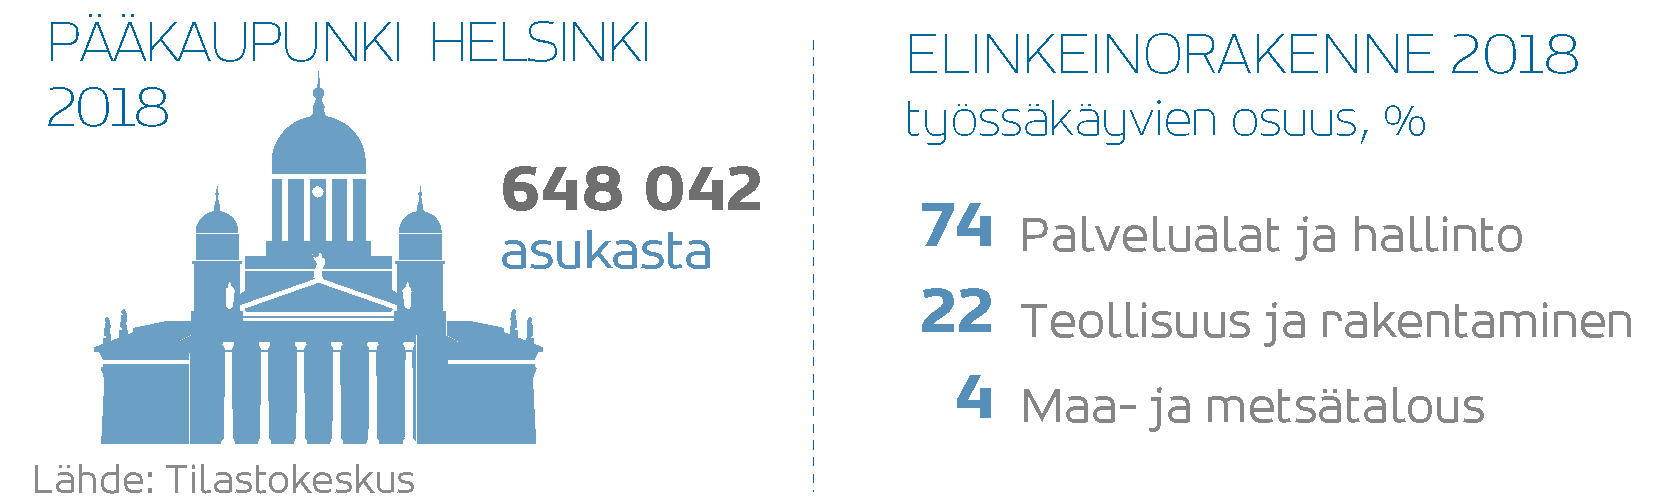 Pääkaupunki Helsinki: vuonna 2018 asukkaita 648042. Elinkeinorakenne 2018, työssäkäyvien osuus: palvelualat ja hallinto 72 %, teollisuus ja rakenne 22 %, maa- ja metsätalous 4 %. Lähde: Tilastokeskus.